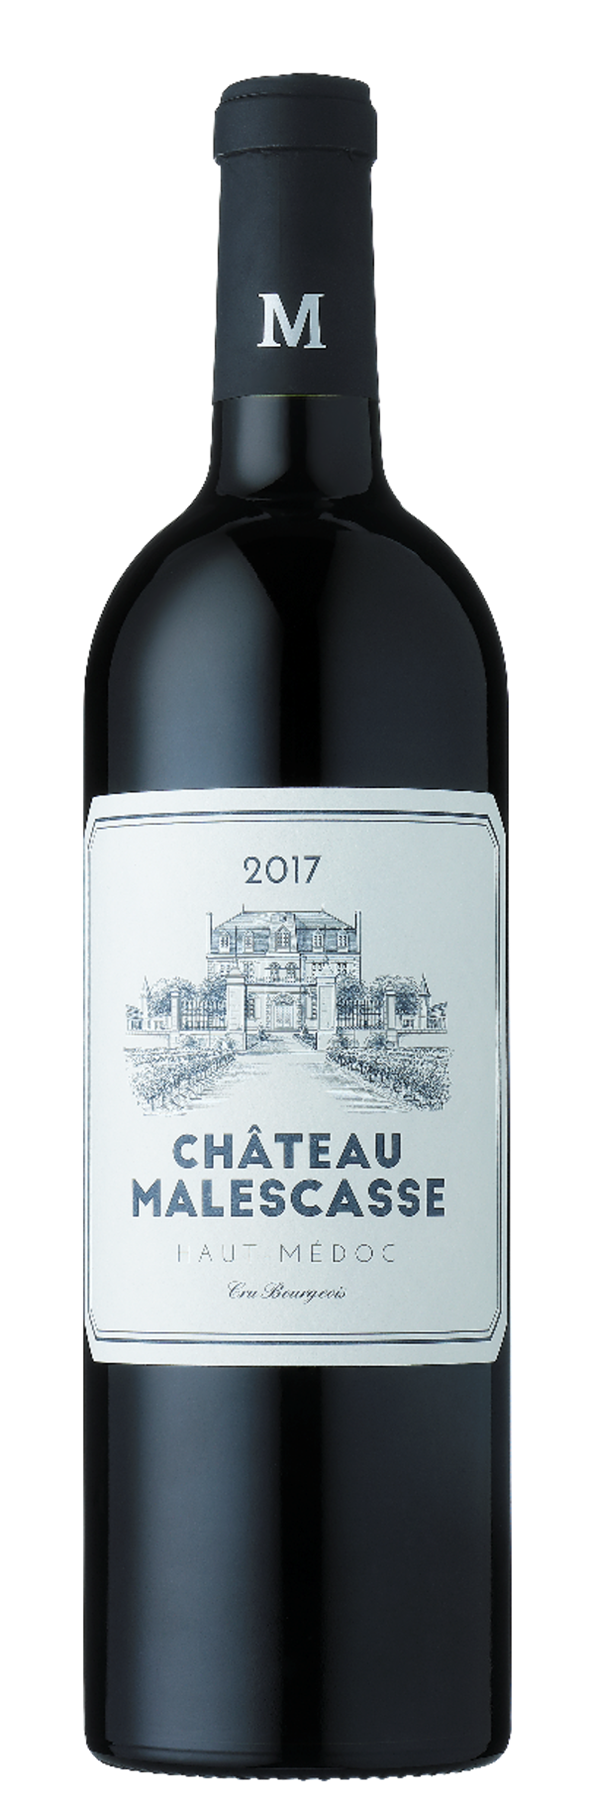 Chateau Malescasse Haut-Médoc Cru Bourgeois Exceptionnel 2017